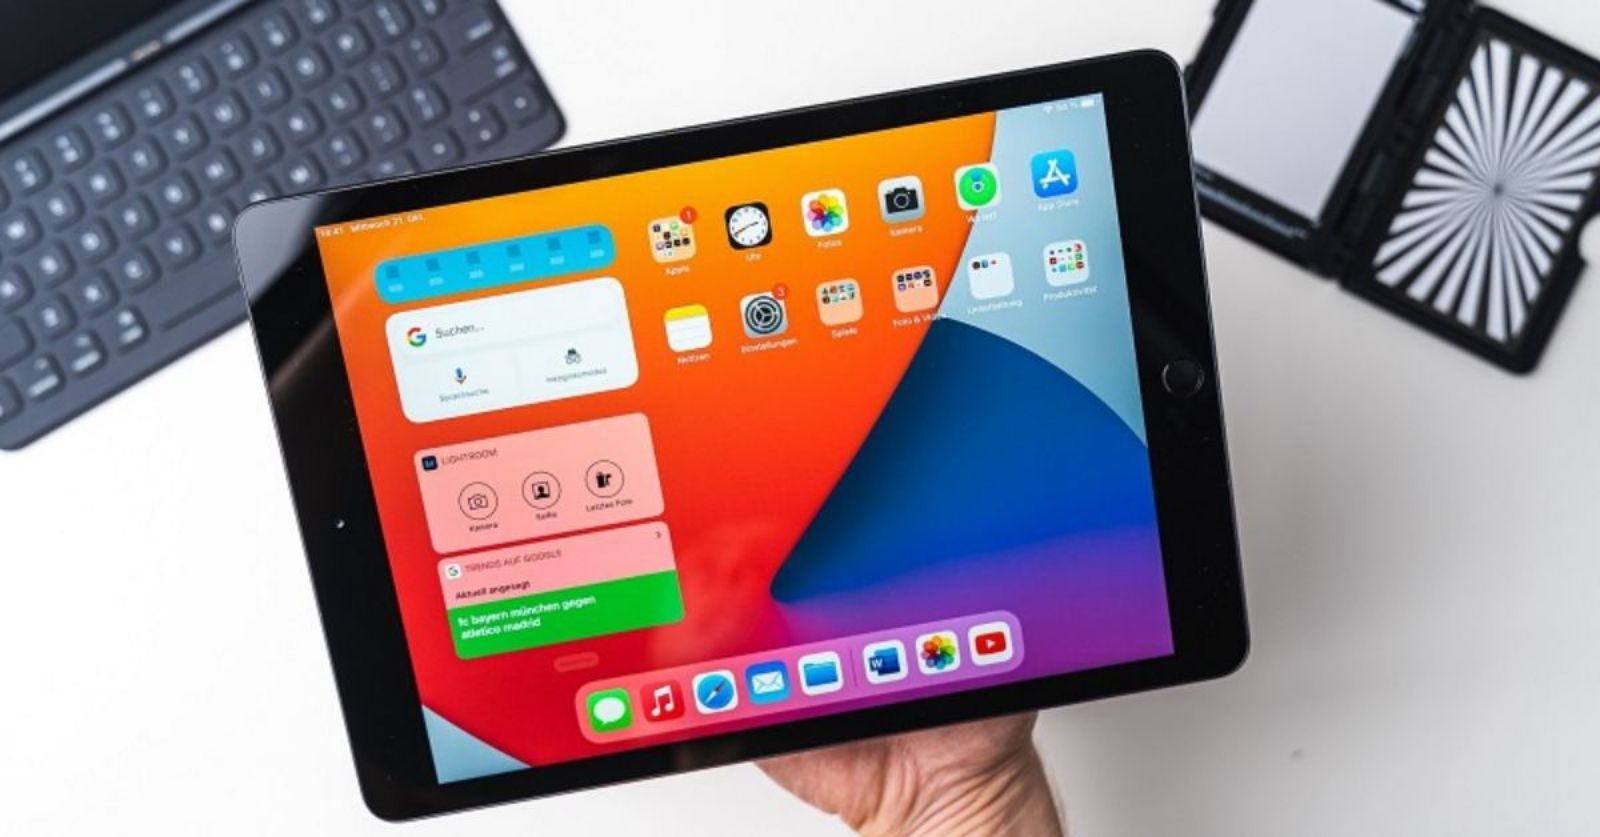 ShopDunk - Đánh giá thông tin kĩ thuật về iPad 4 (iPad thế hệ 4)